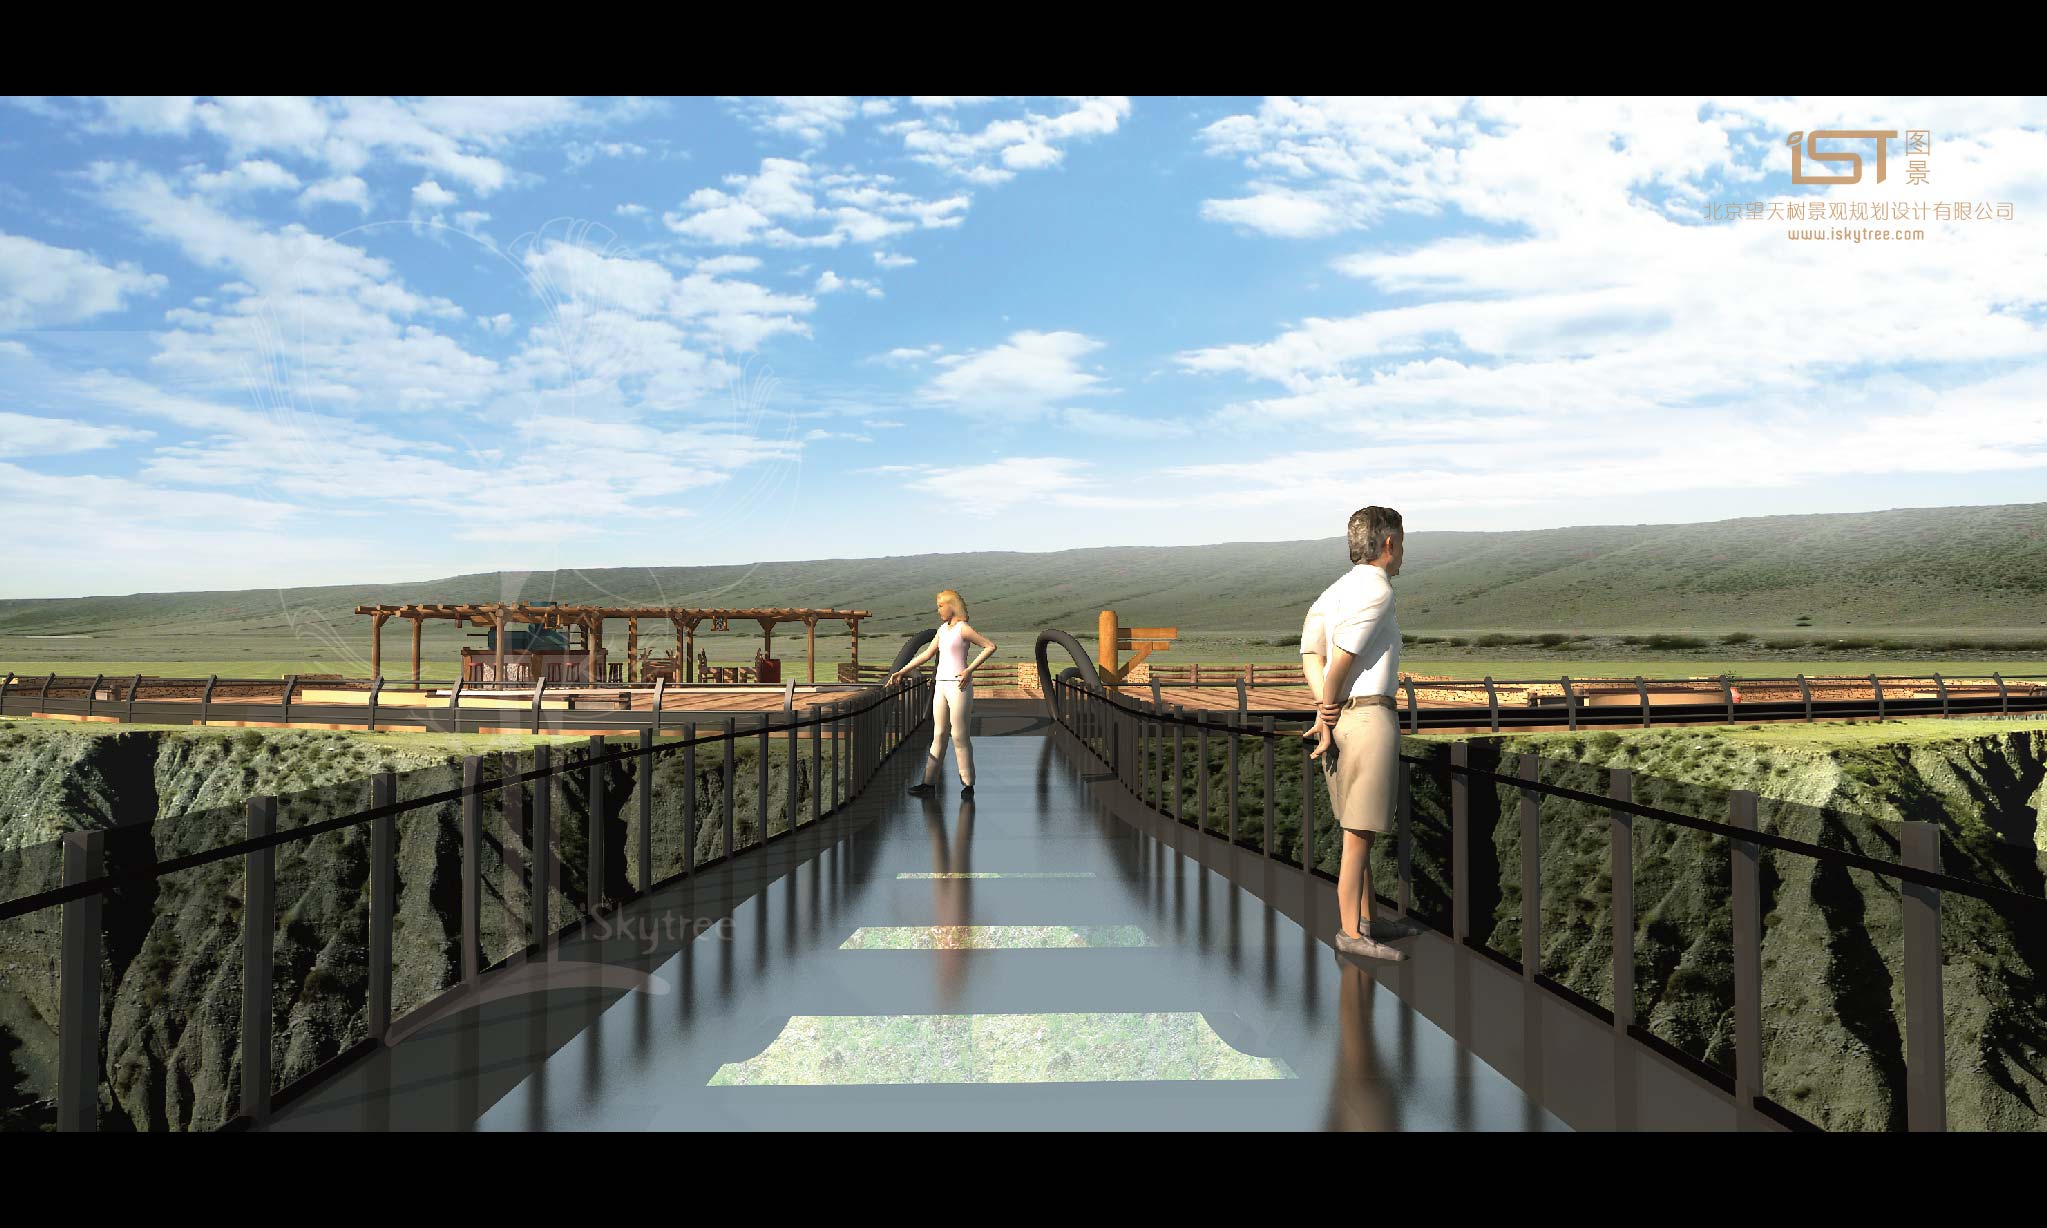 獨山子大峽谷景區挑空長廊與觀景平臺設計方案效果表現